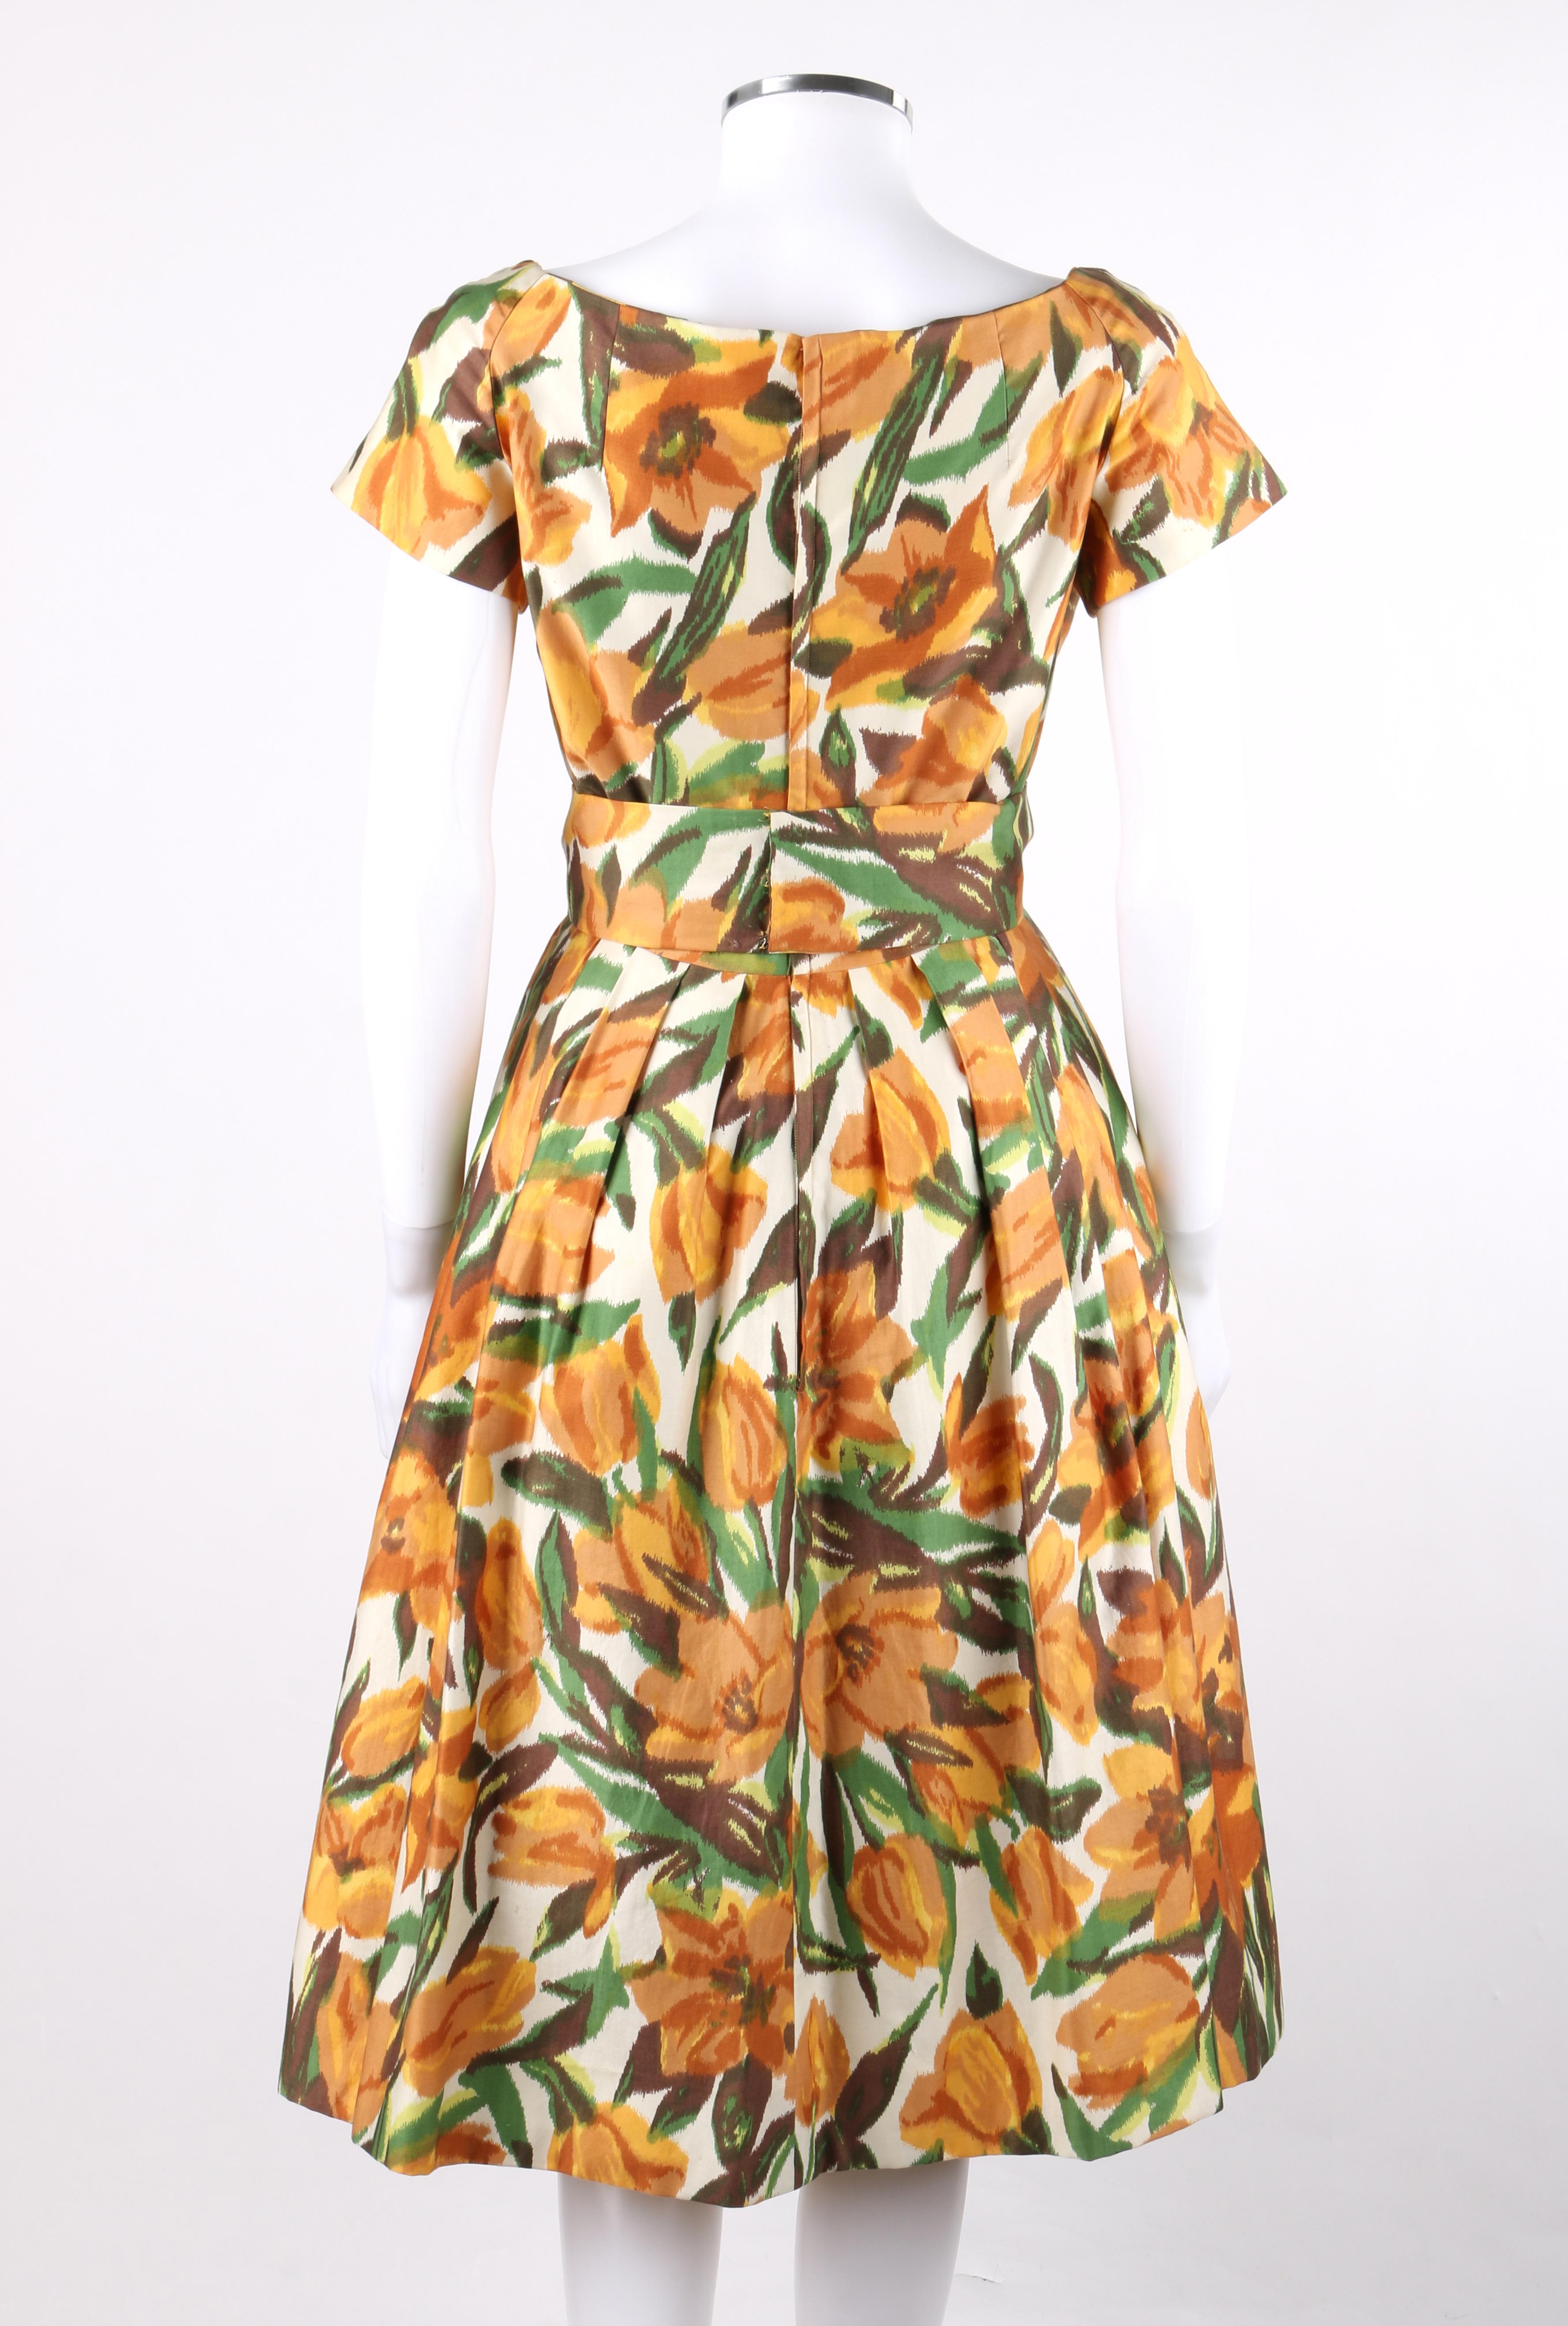 adele simpson vintage dress